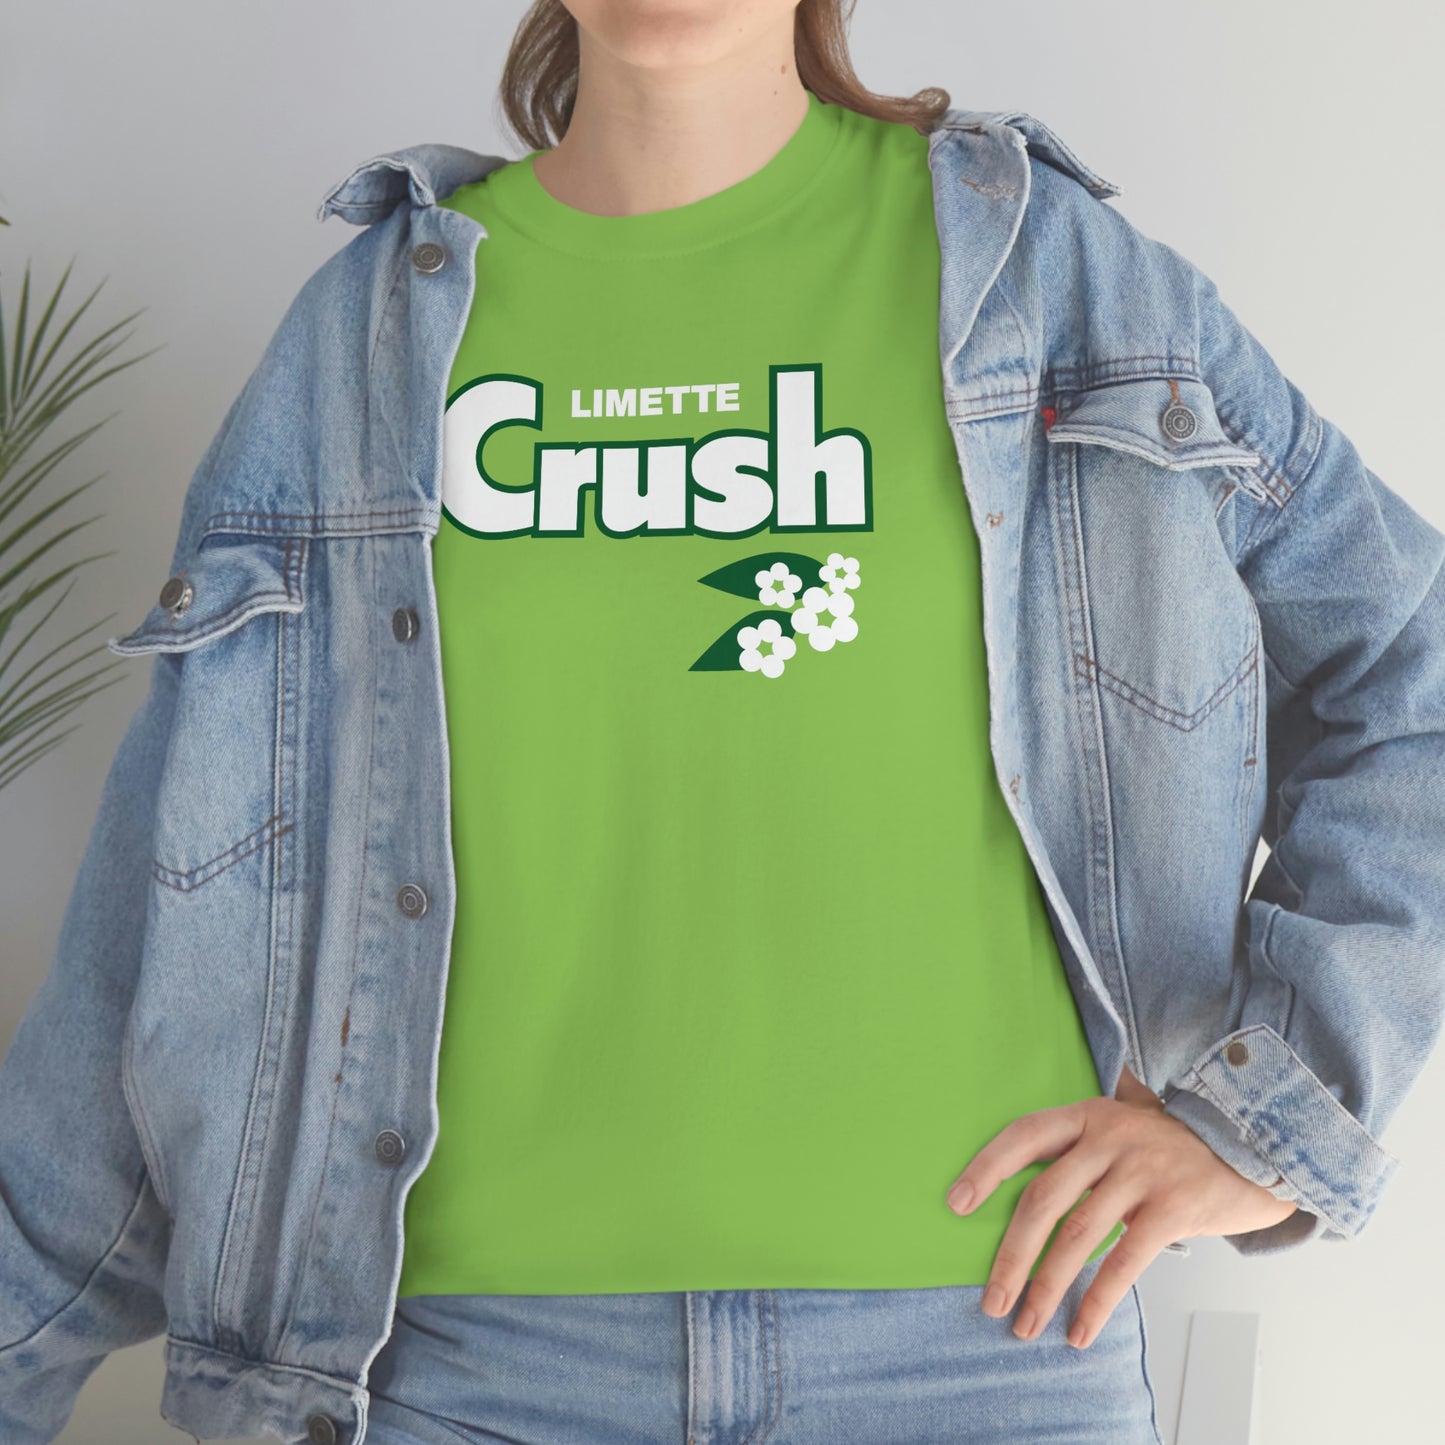 Crush Soda T-Shirt